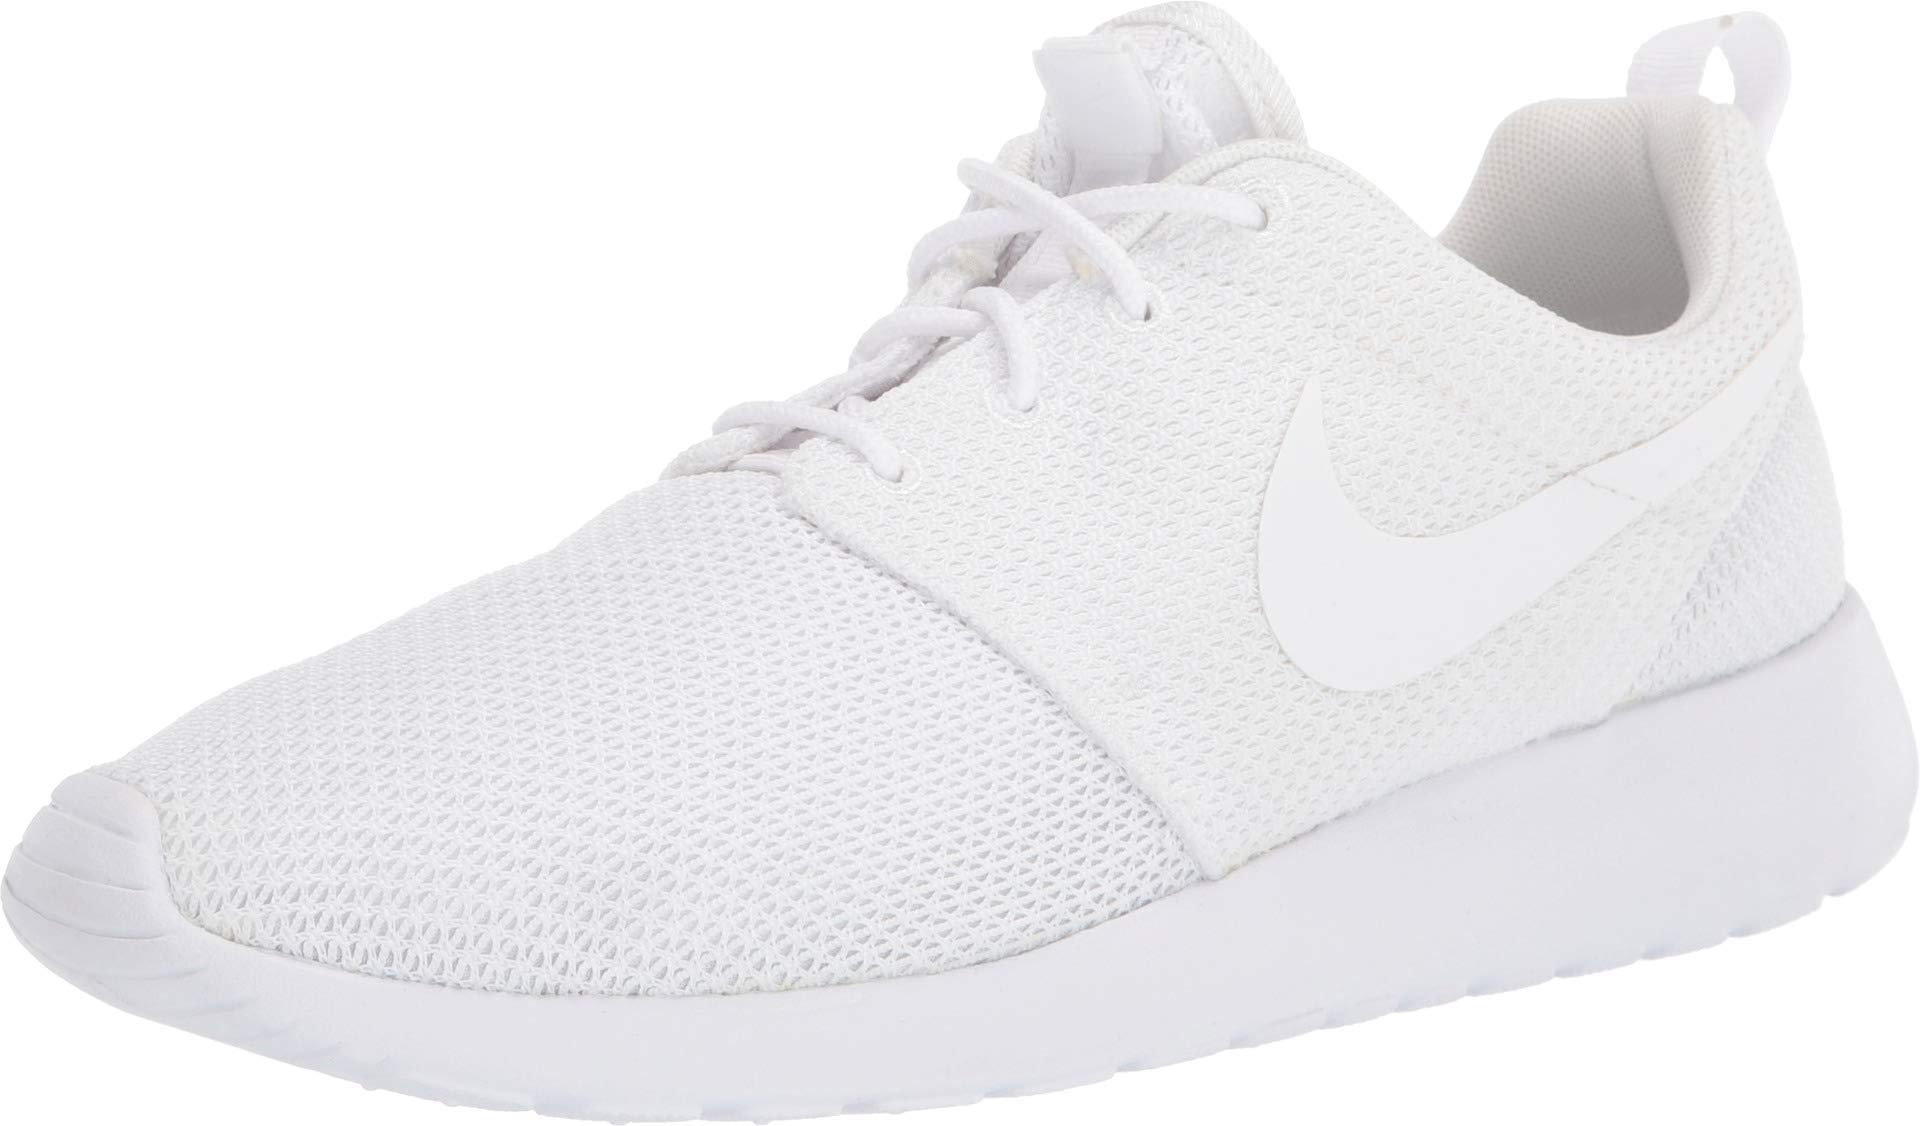 Nike Roshe One Women's Shoe in White/Black/White (White) - Lyst